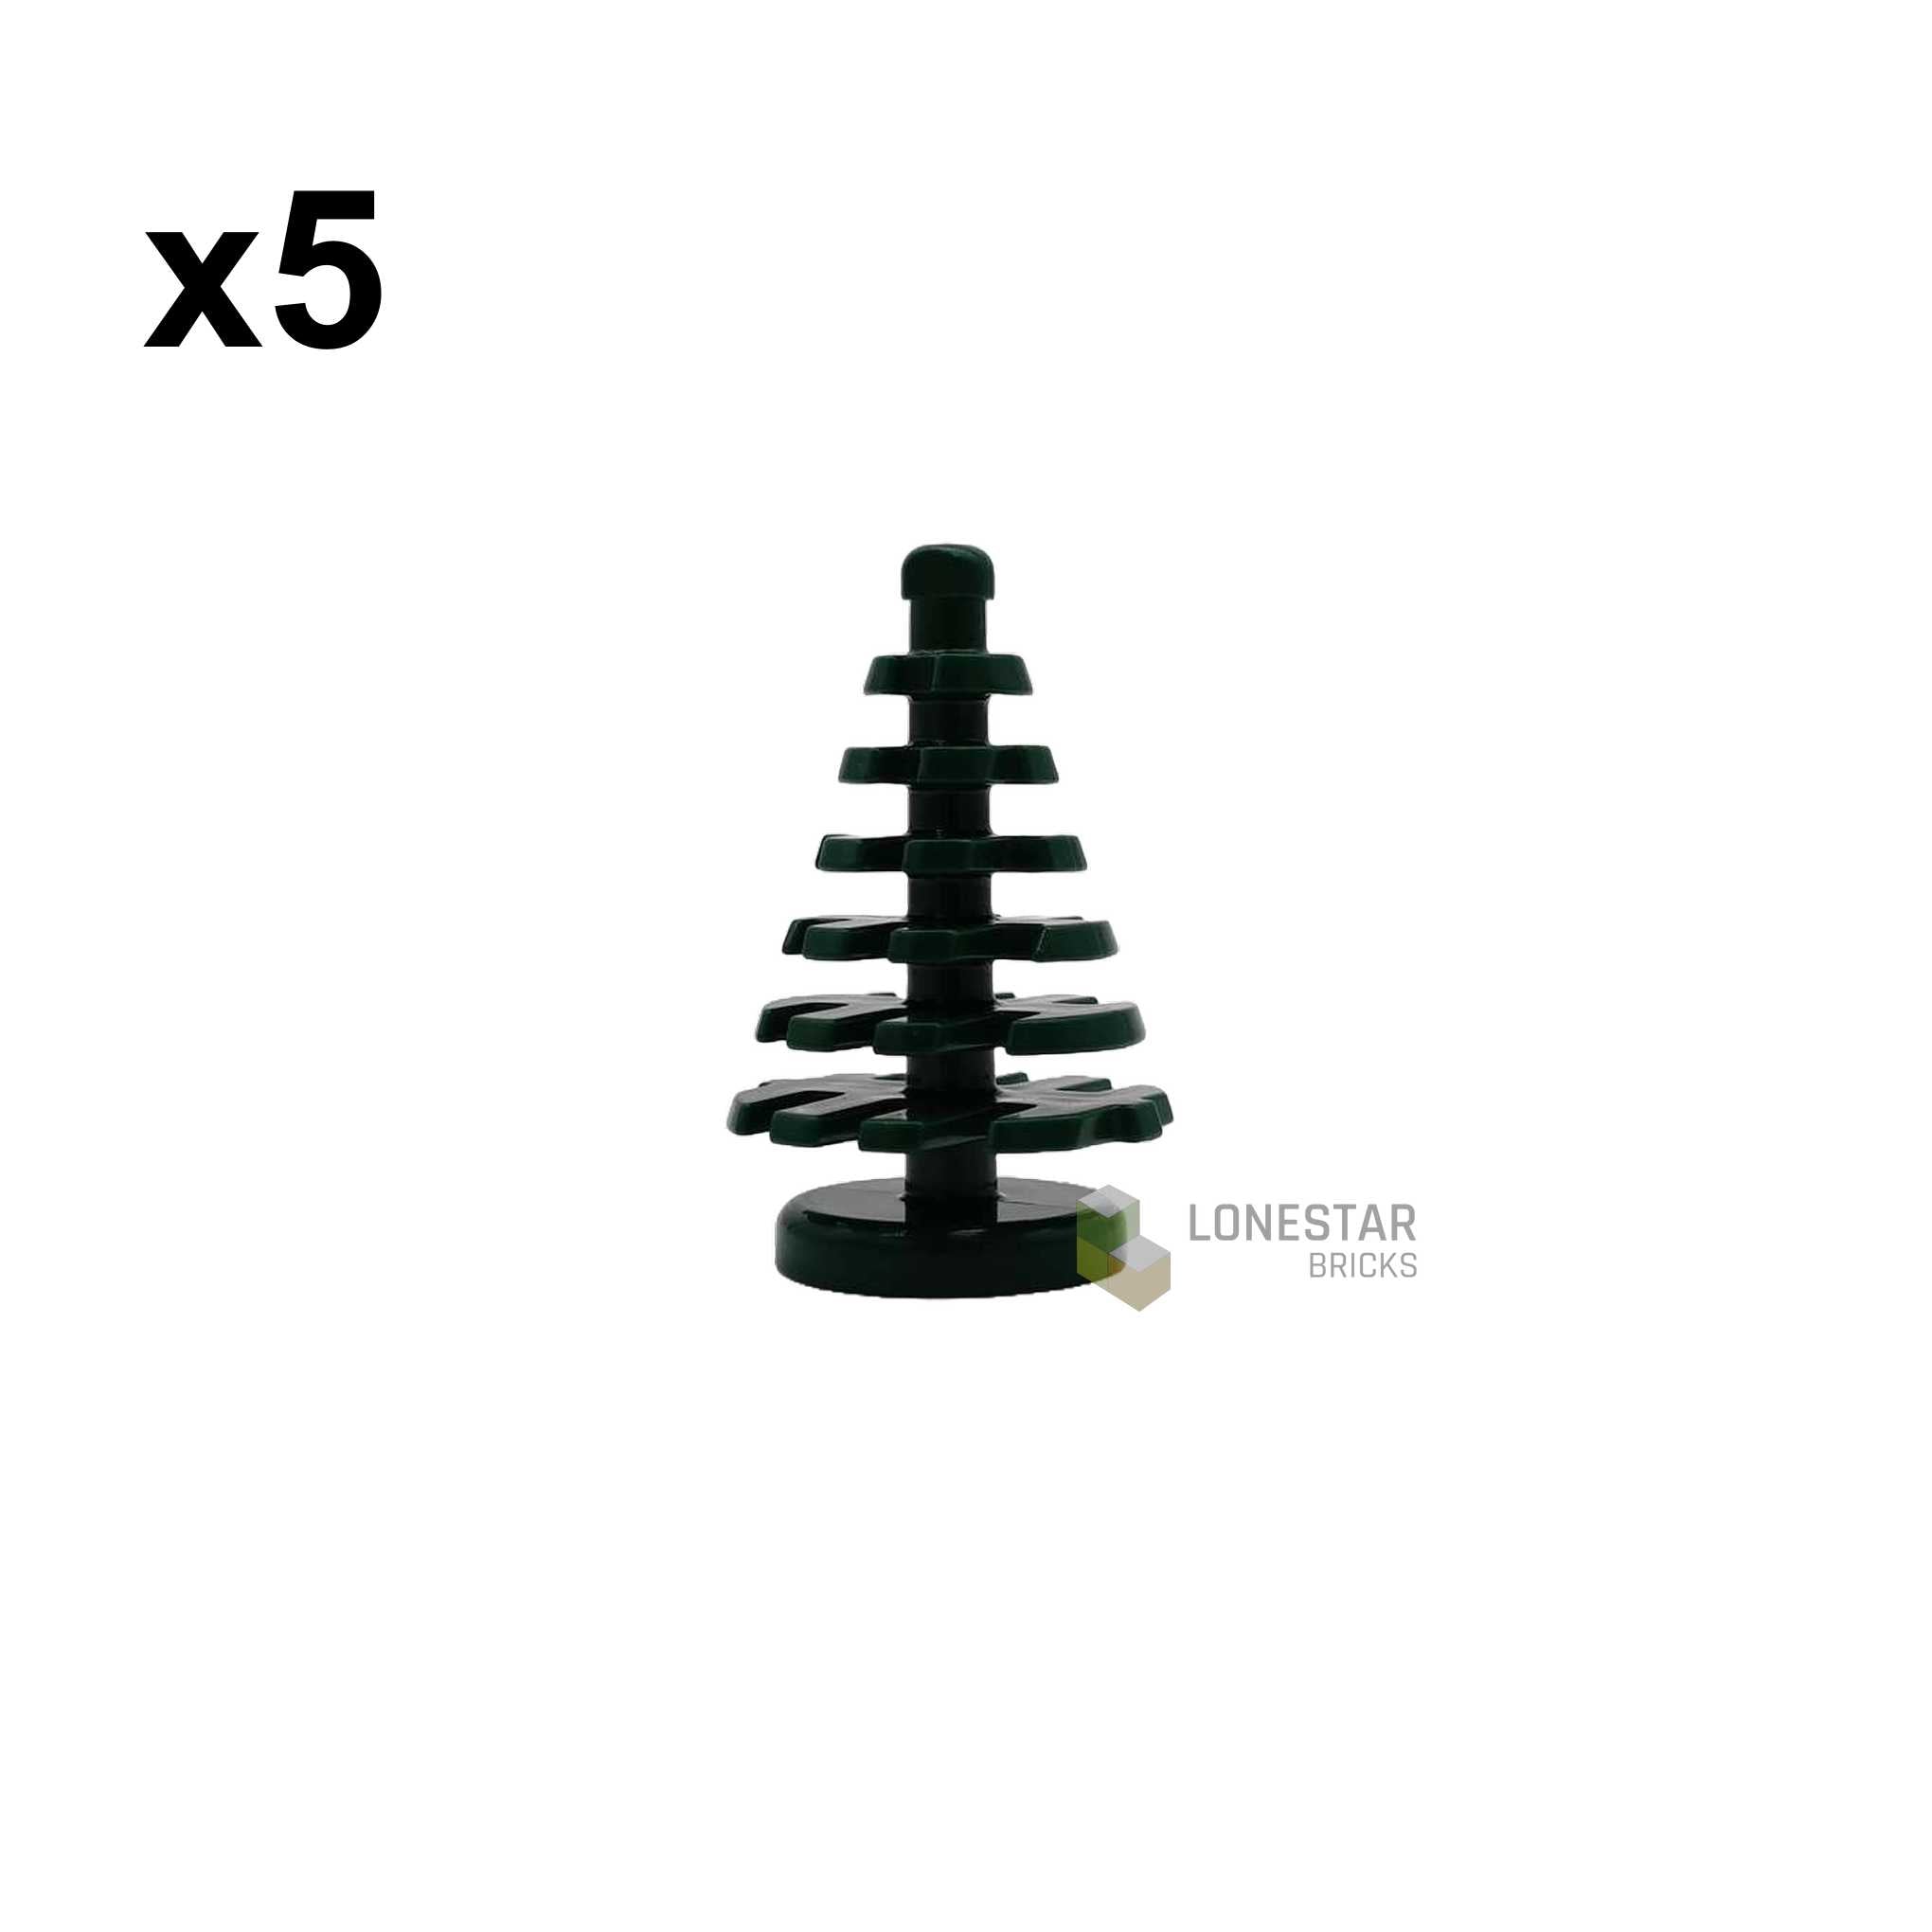 20030 - Kleiner Tannenbaum dunkelgrün 5 Stück (Lonestar-Bricks)